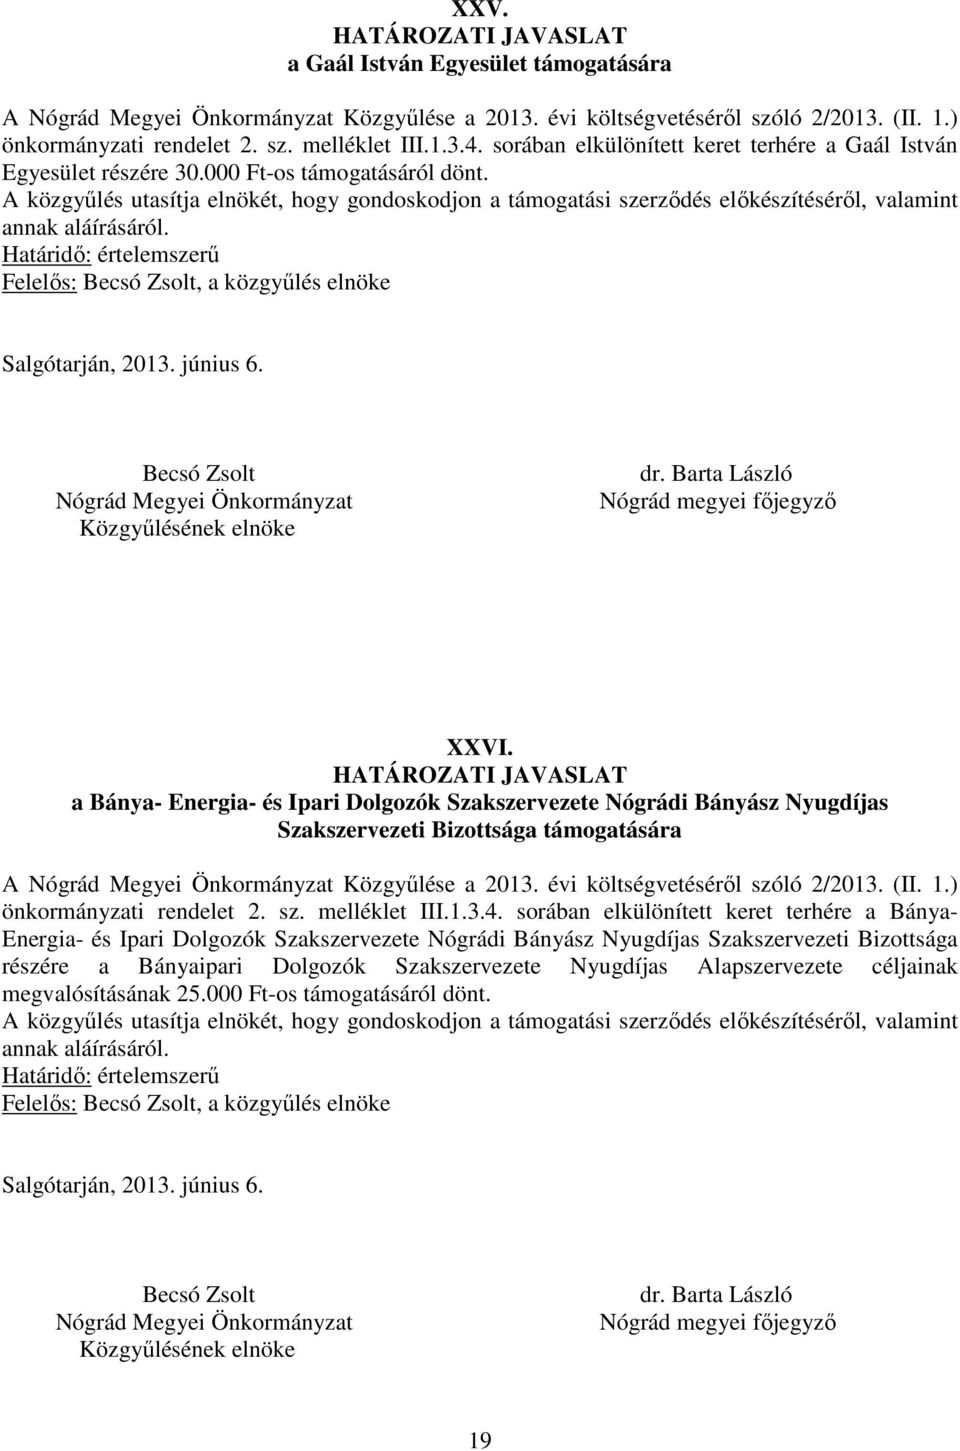 a Bánya- Energia- és Ipari Dolgozók Szakszervezete Nógrádi Bányász Nyugdíjas Szakszervezeti Bizottsága támogatására A Közgyűlése a 2013. évi költségvetéséről szóló 2/2013. (II. 1.